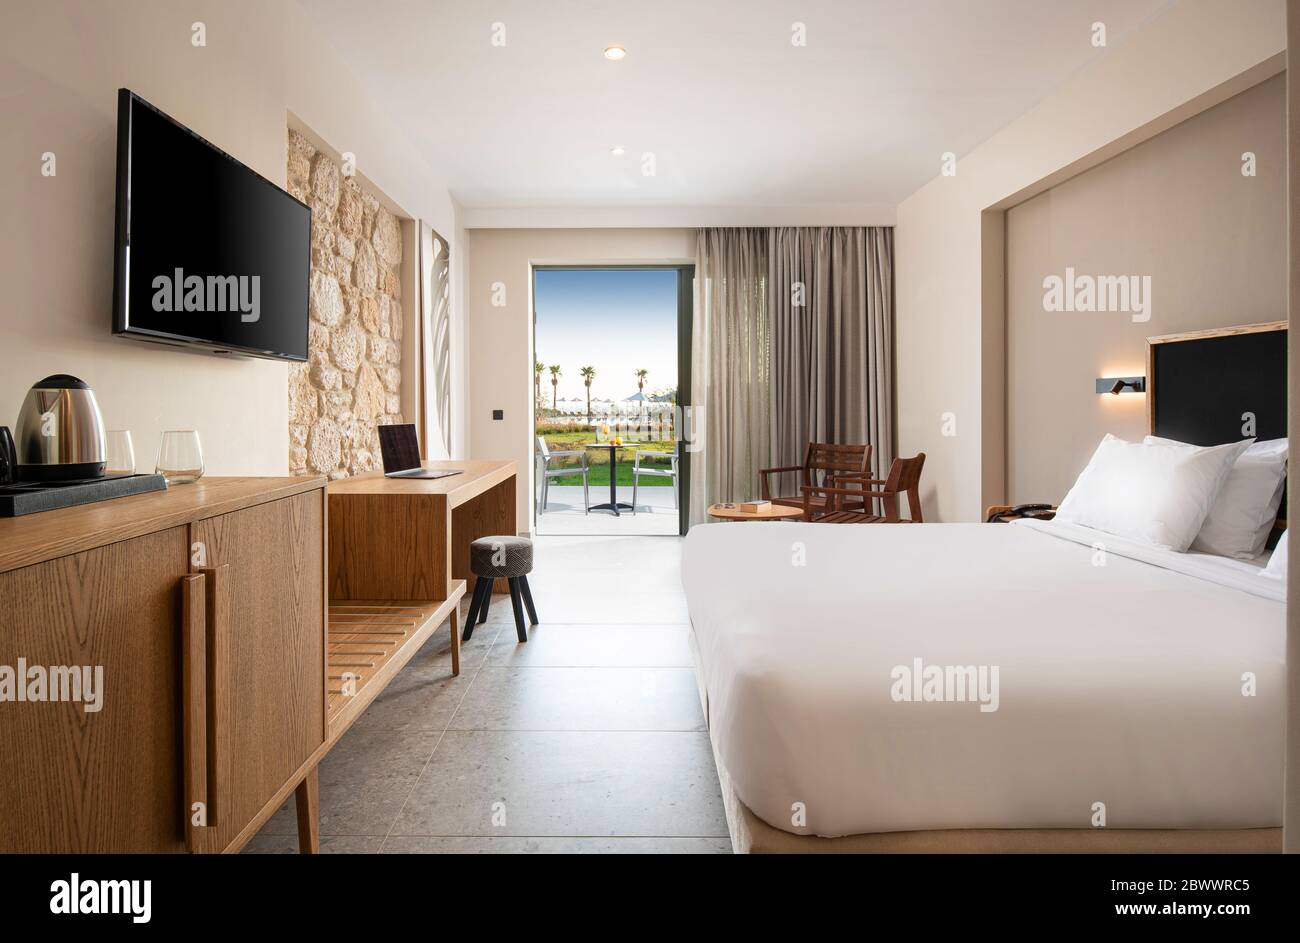 Interni luminosi e vuoti della camera da letto contemporanea dell'hotel con pareti in pietra beige, mobili in legno e terrazza all'aperto Foto Stock